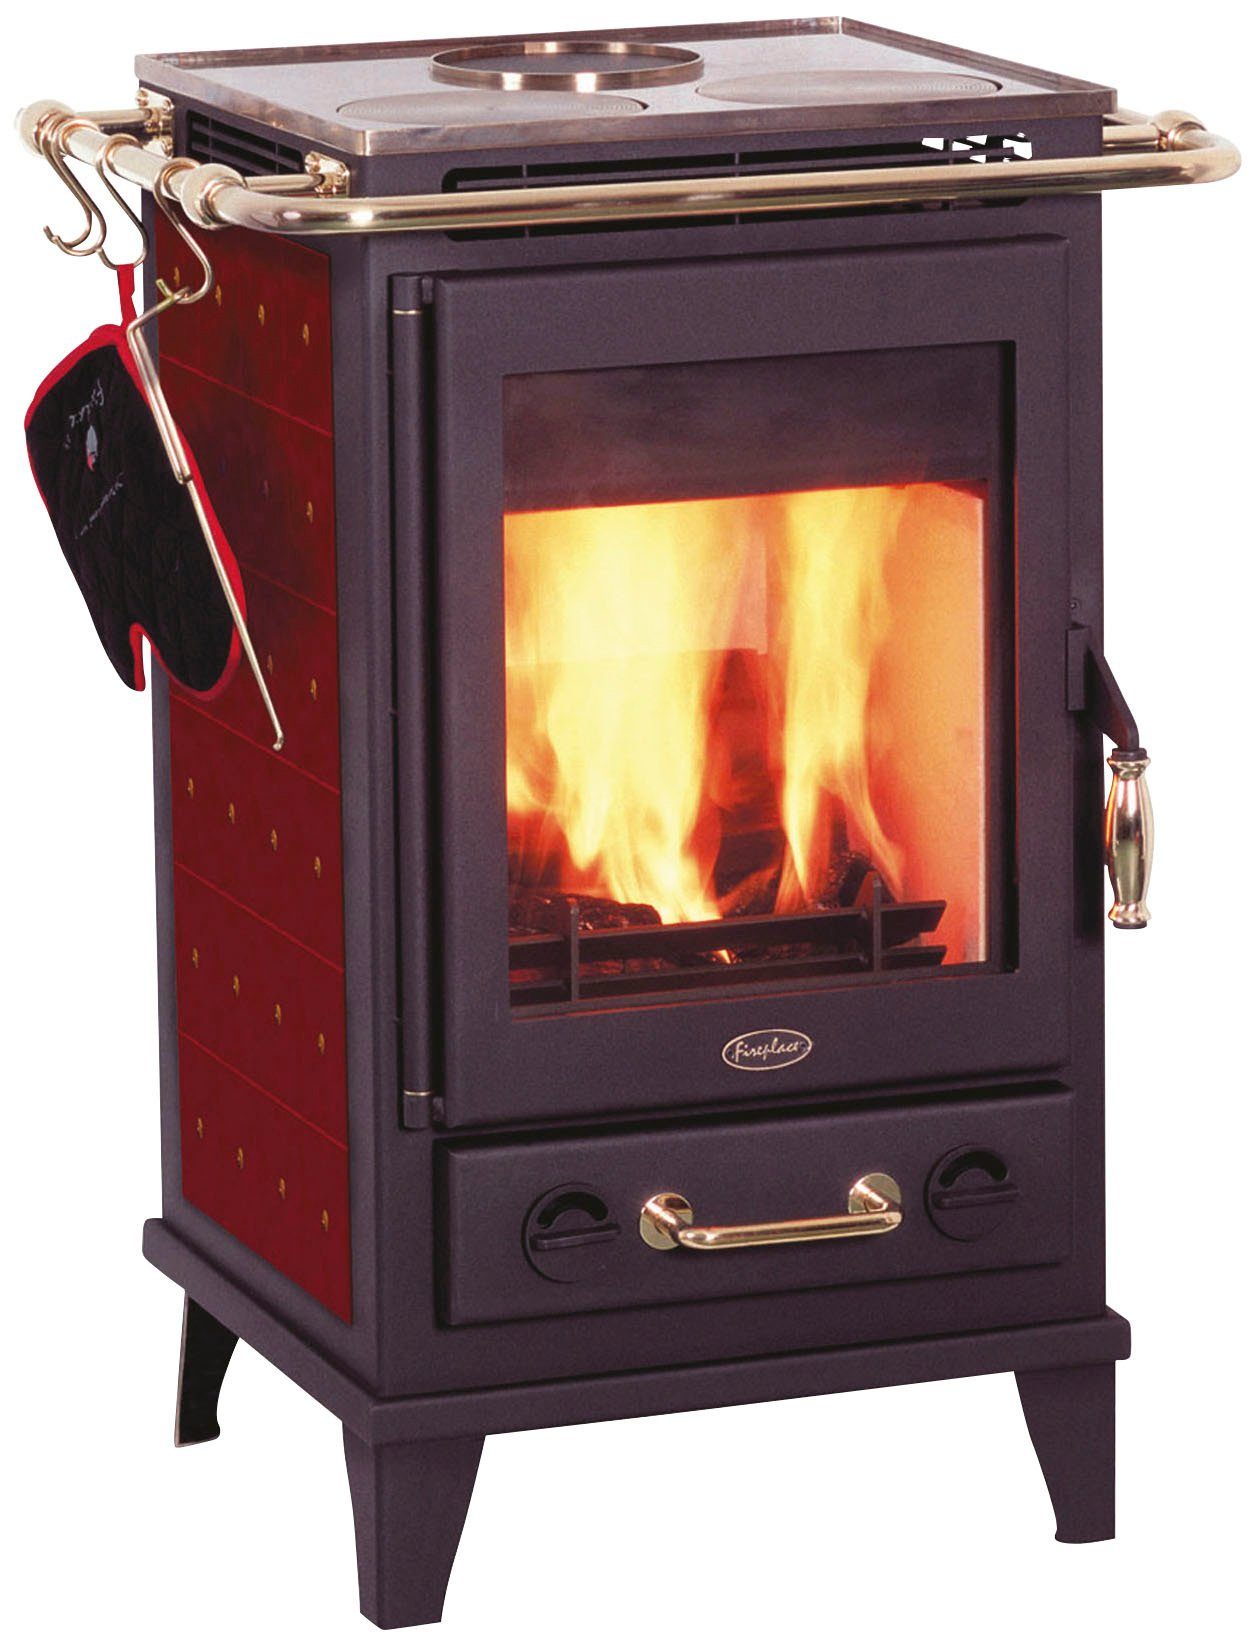 Florenz Fireplace mit verkleidet kW, 7 bordeux Zeitbrand, Seitenteile Kochplatten, mit Keramikfliesen Keramik, Kaminofen